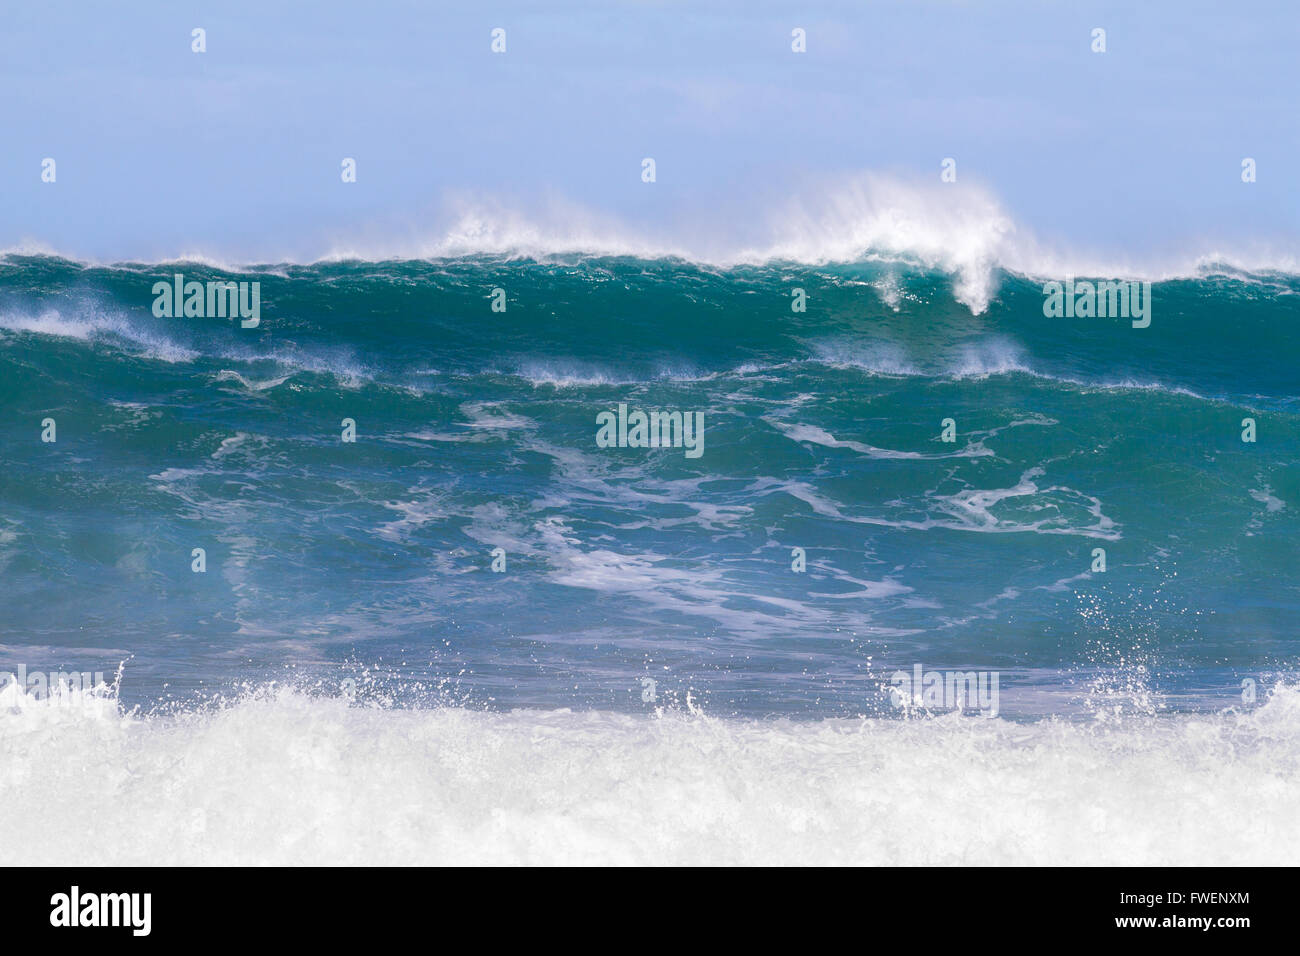 Queste onde gigantesche sono provenienti dalla serie e in piedi sopra i 20 metri di altezza. Il surf è pericoloso e le onde sono molto intimi Foto Stock